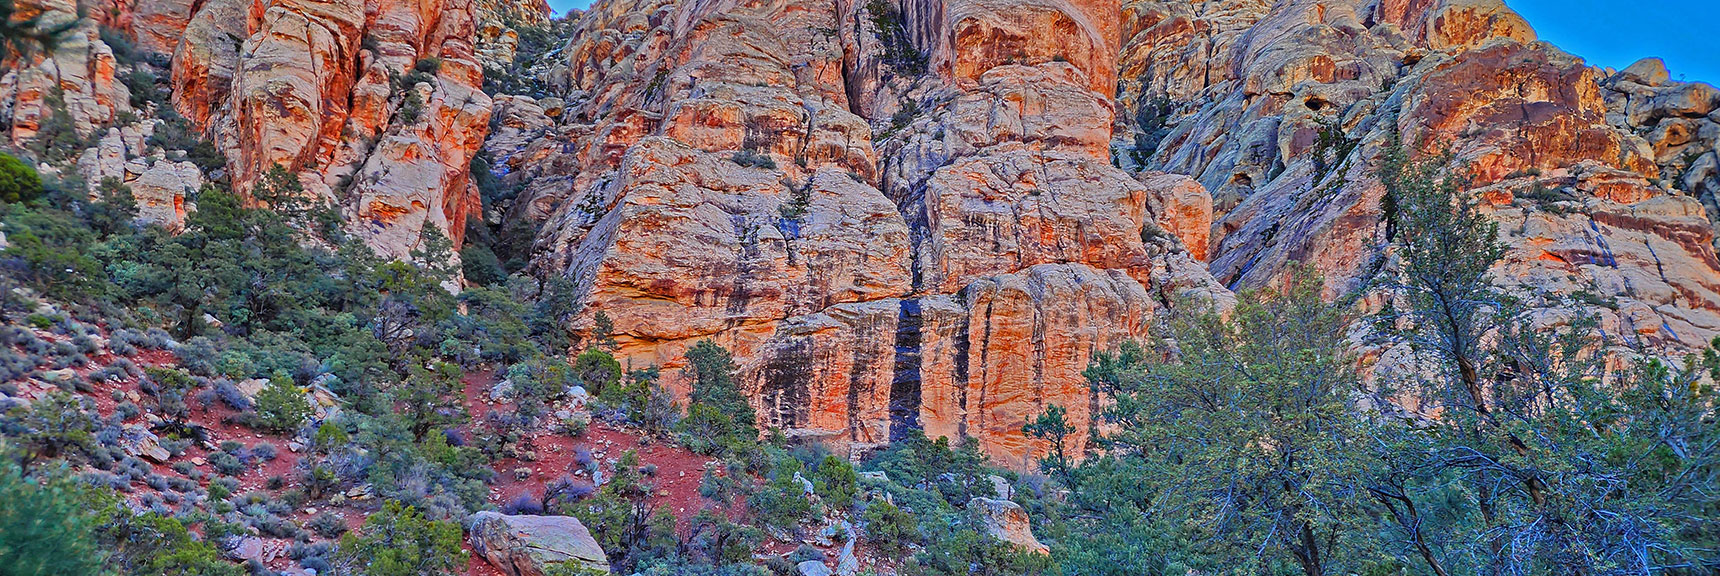 Majestic Cliffs on Northwest White Rock Mountain | White Rock Mountain Loop Trail | Red Rock Canyon, Nevada